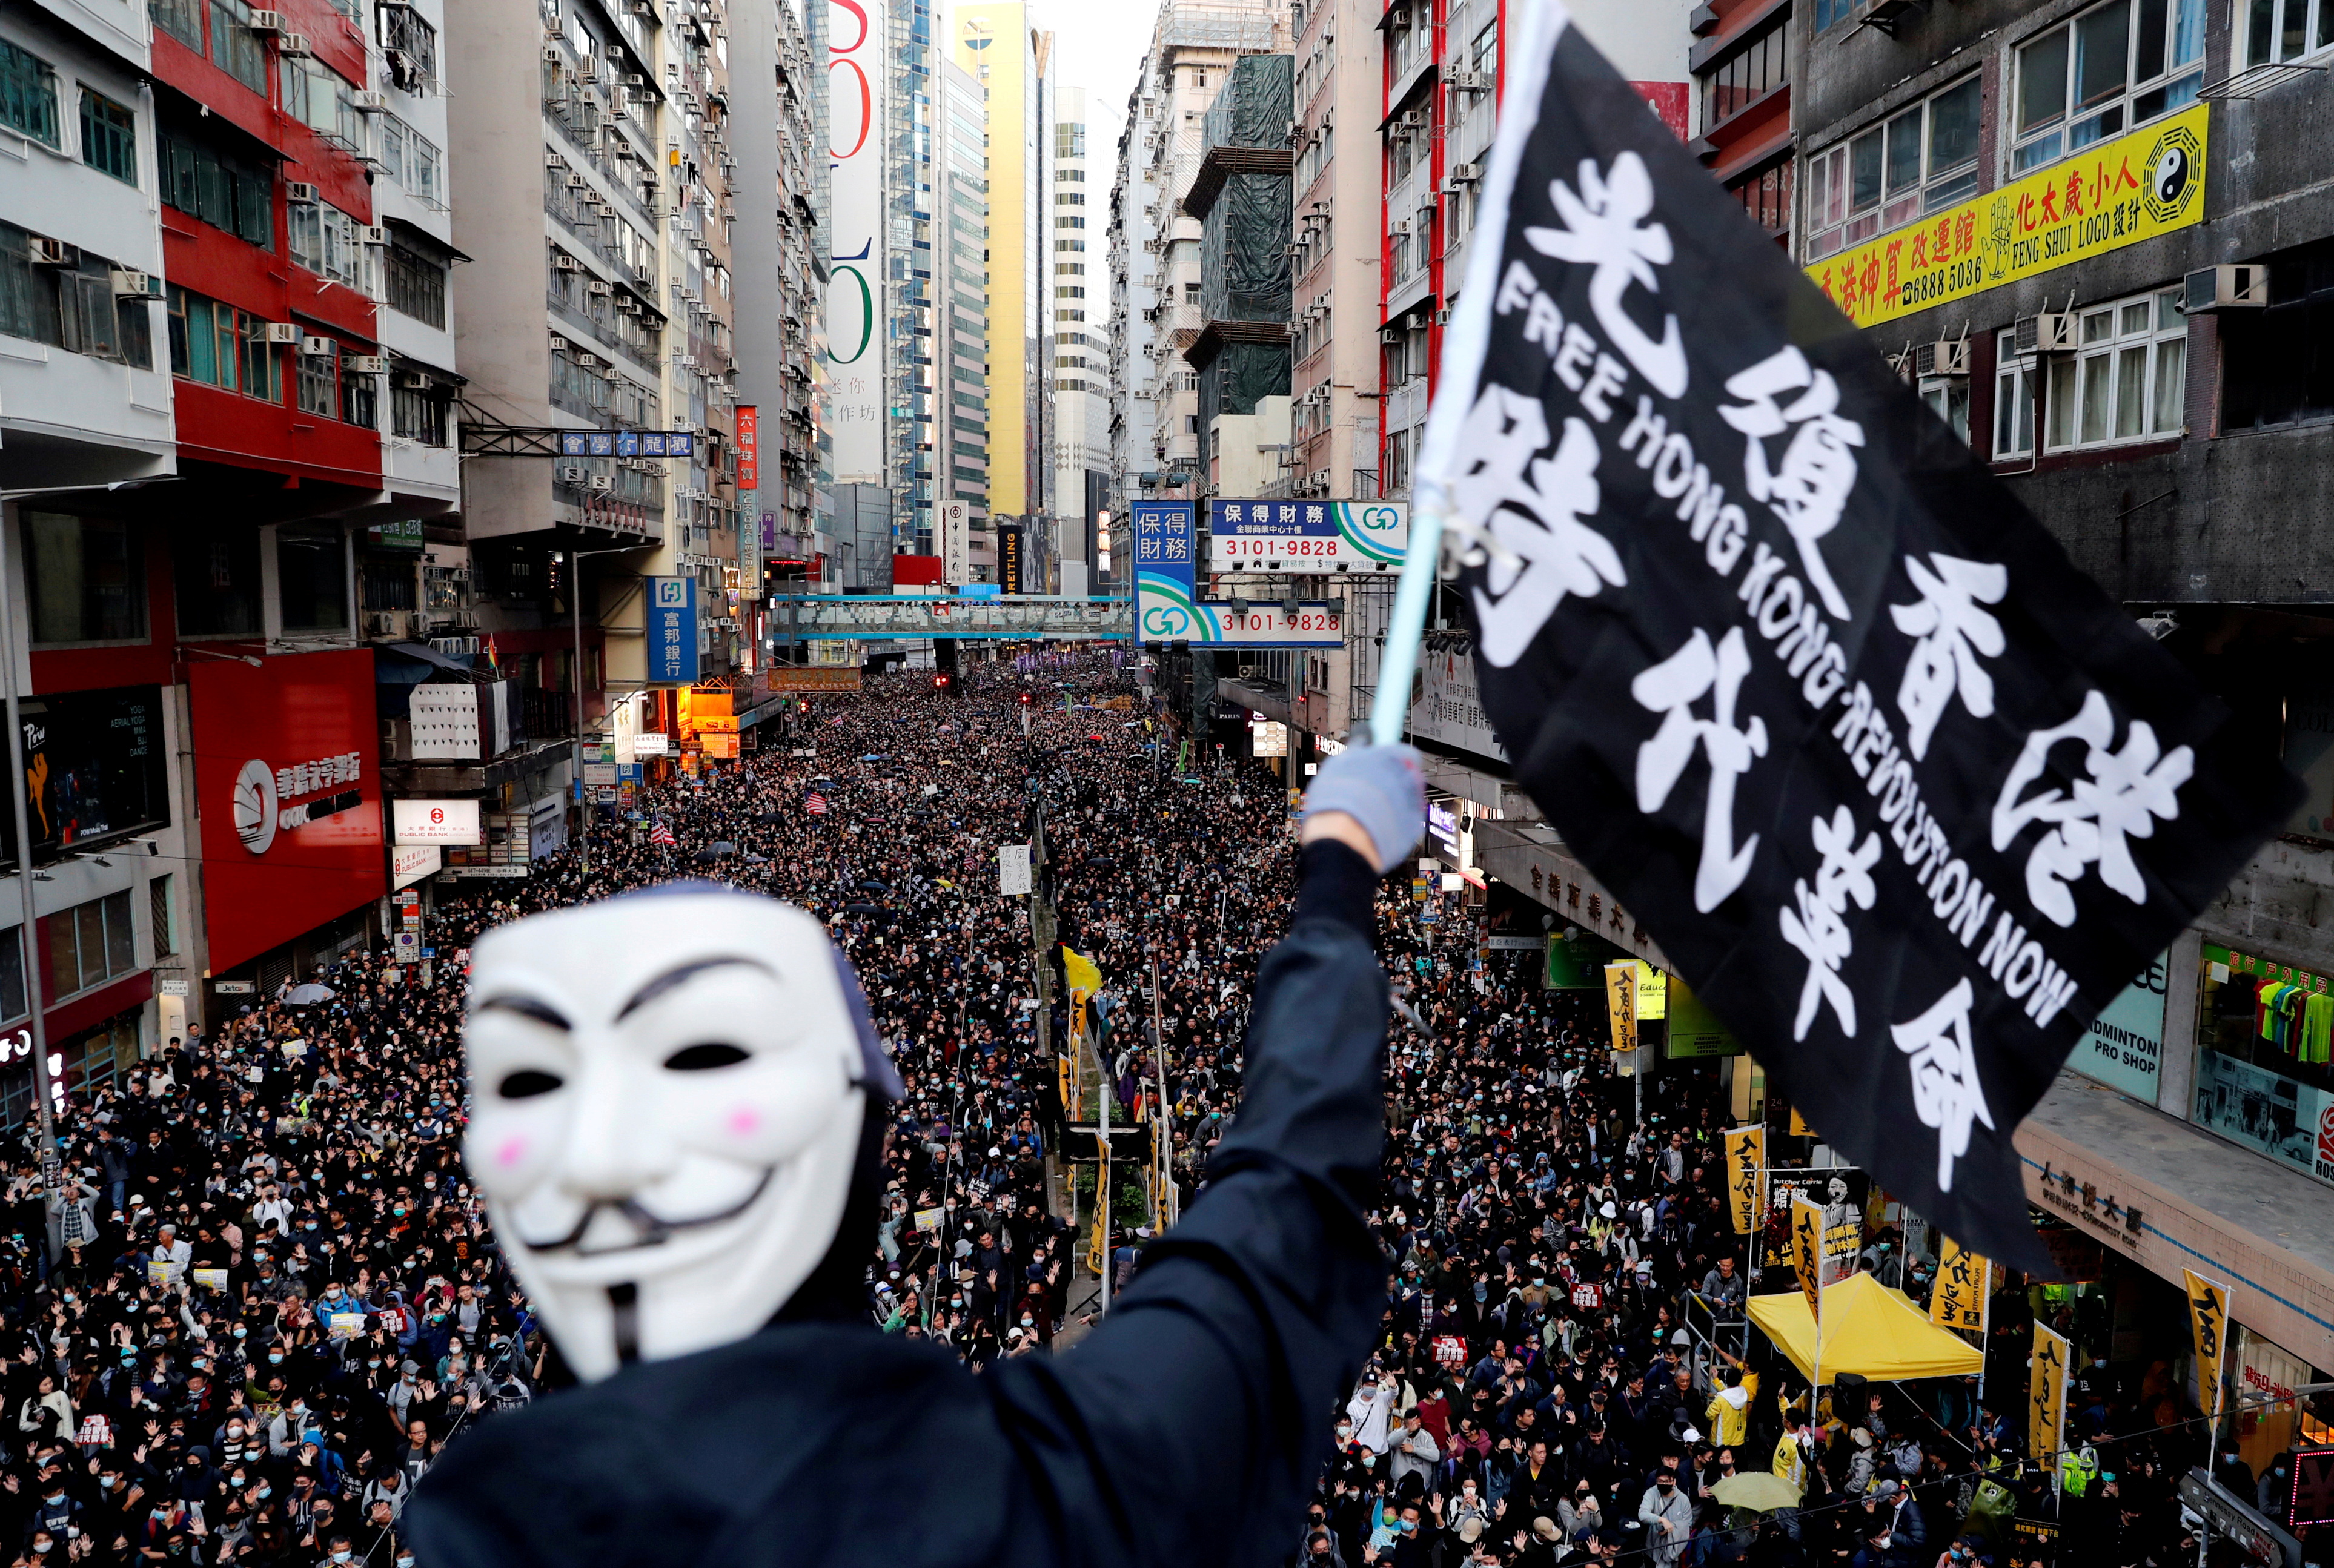 Un manifestante con una máscara de Guy Fawkes agita una bandera durante una marcha del Día de los Derechos Humanos, organizada por el Frente Civil de Derechos Humanos, en Hong Kong, China el 8 de diciembre de 2019.